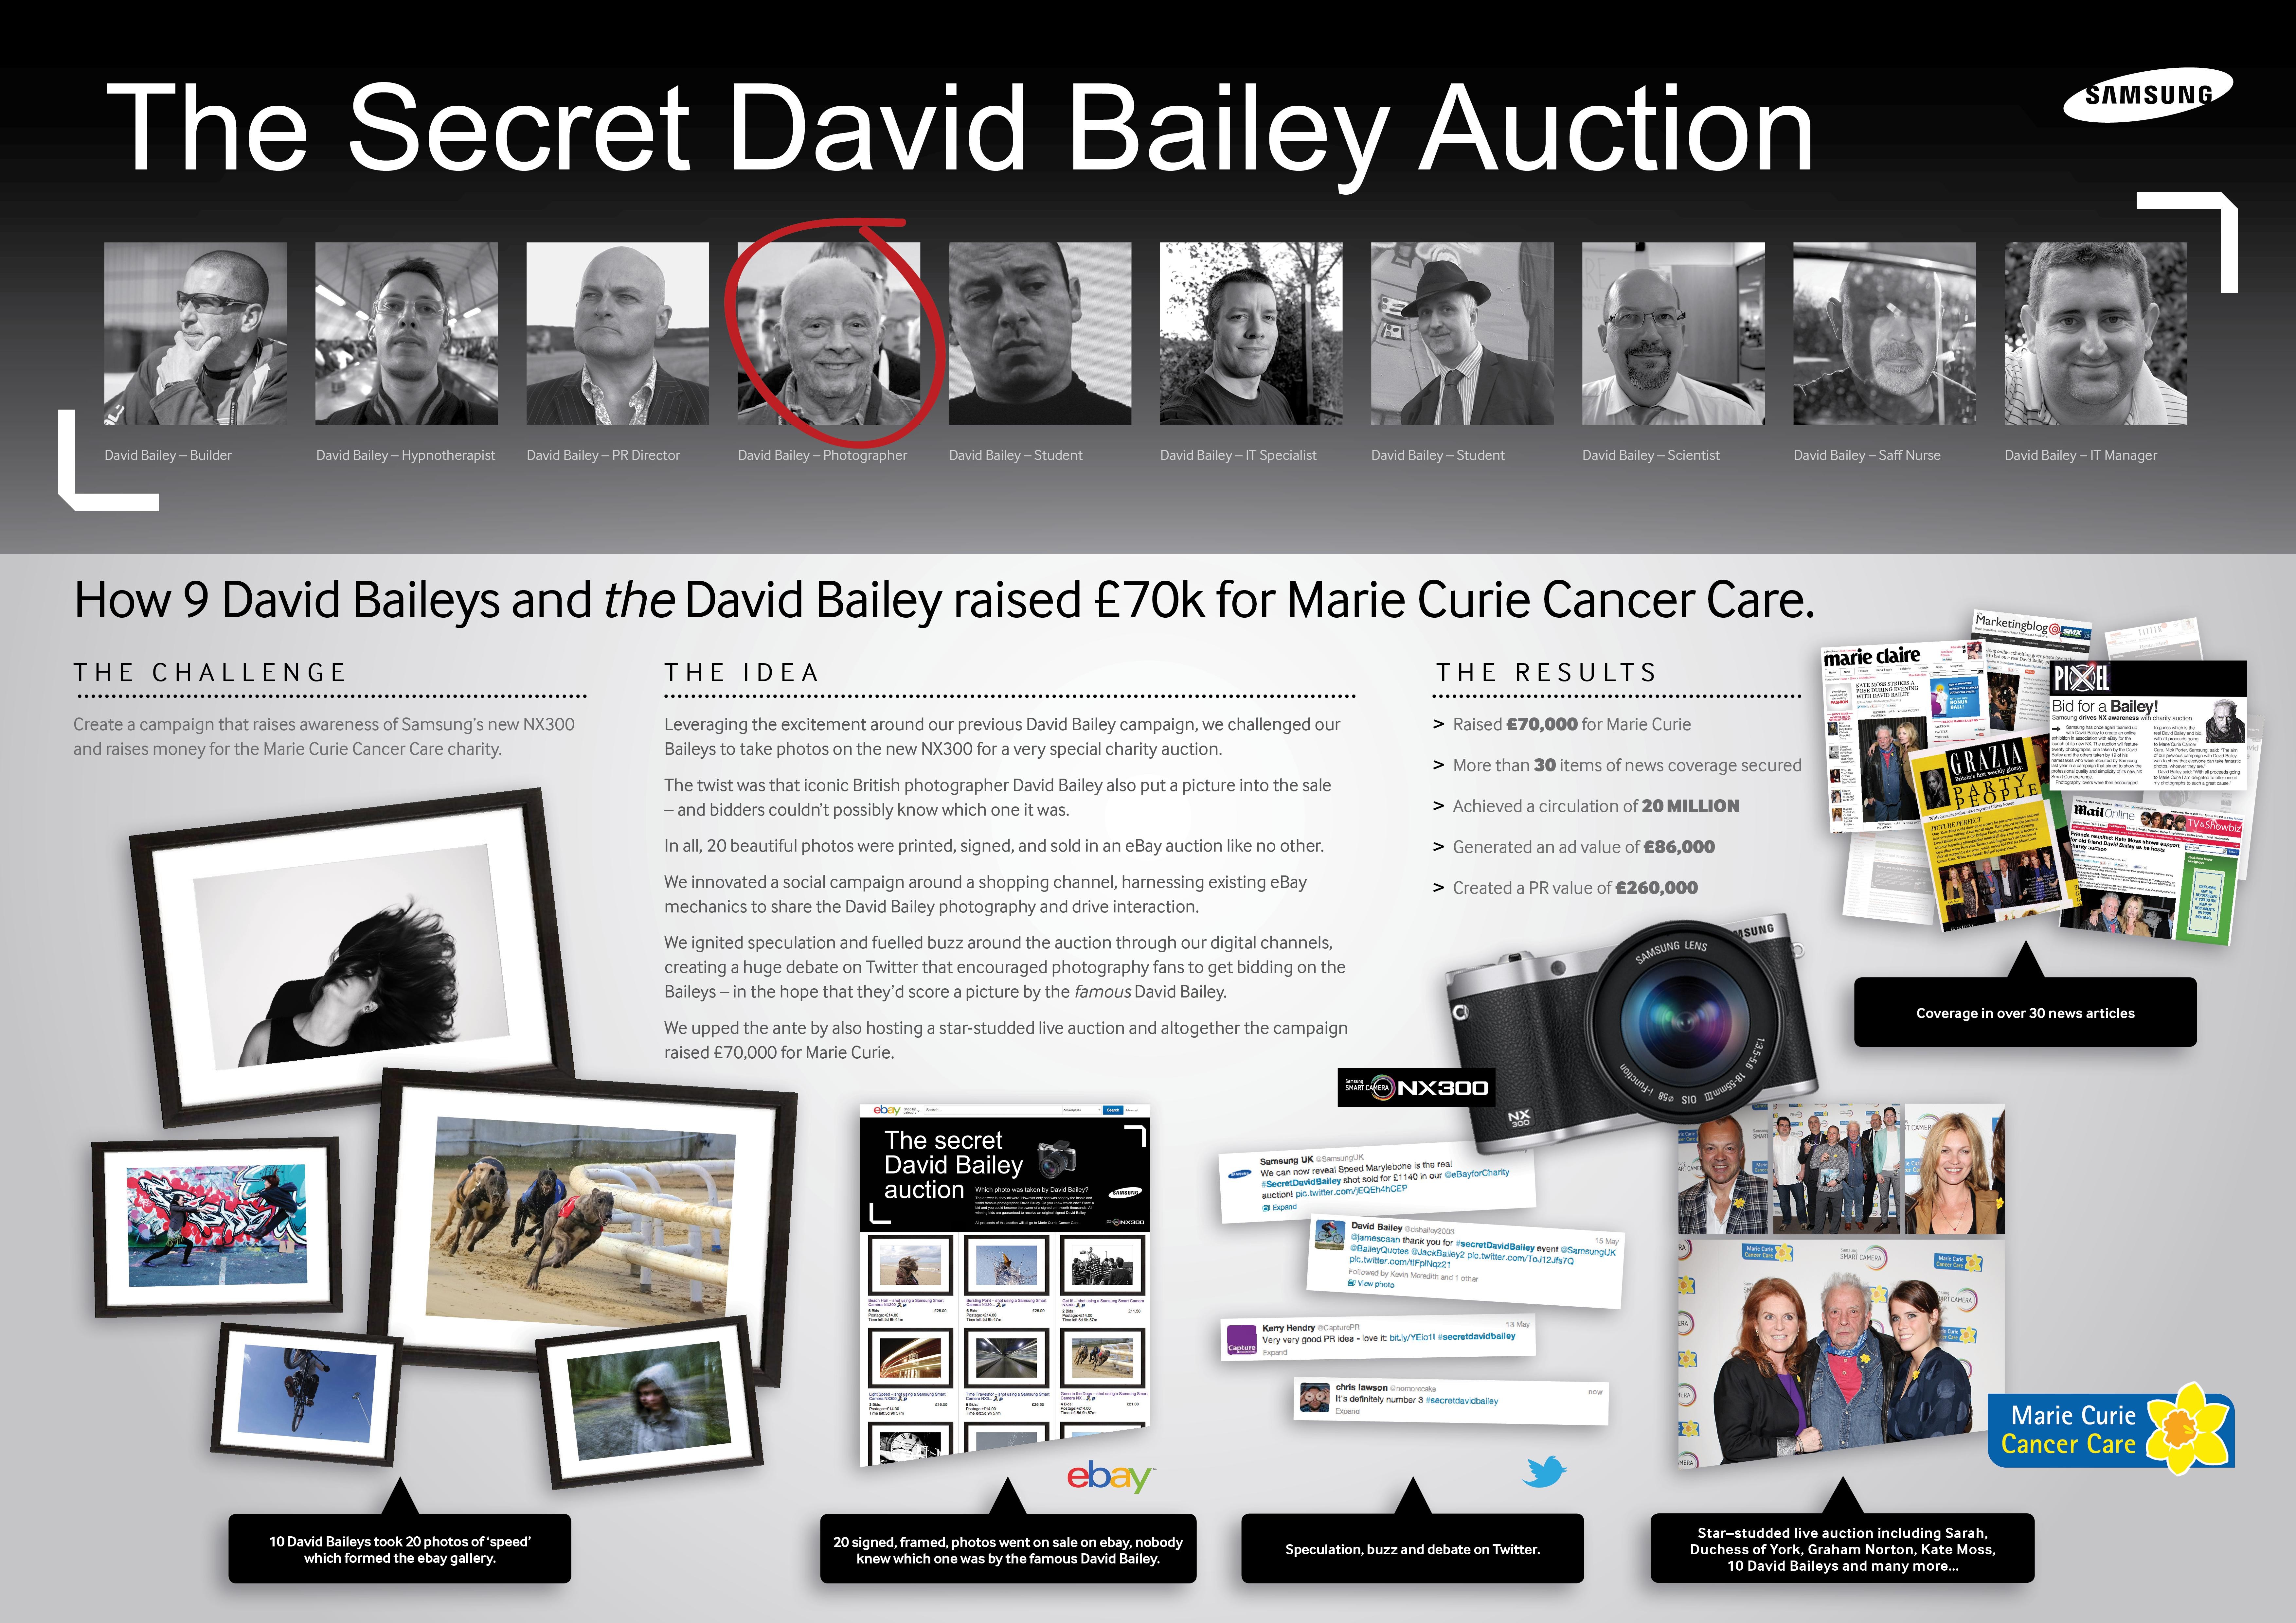 THE SECRET DAVID BAILEY AUCTION